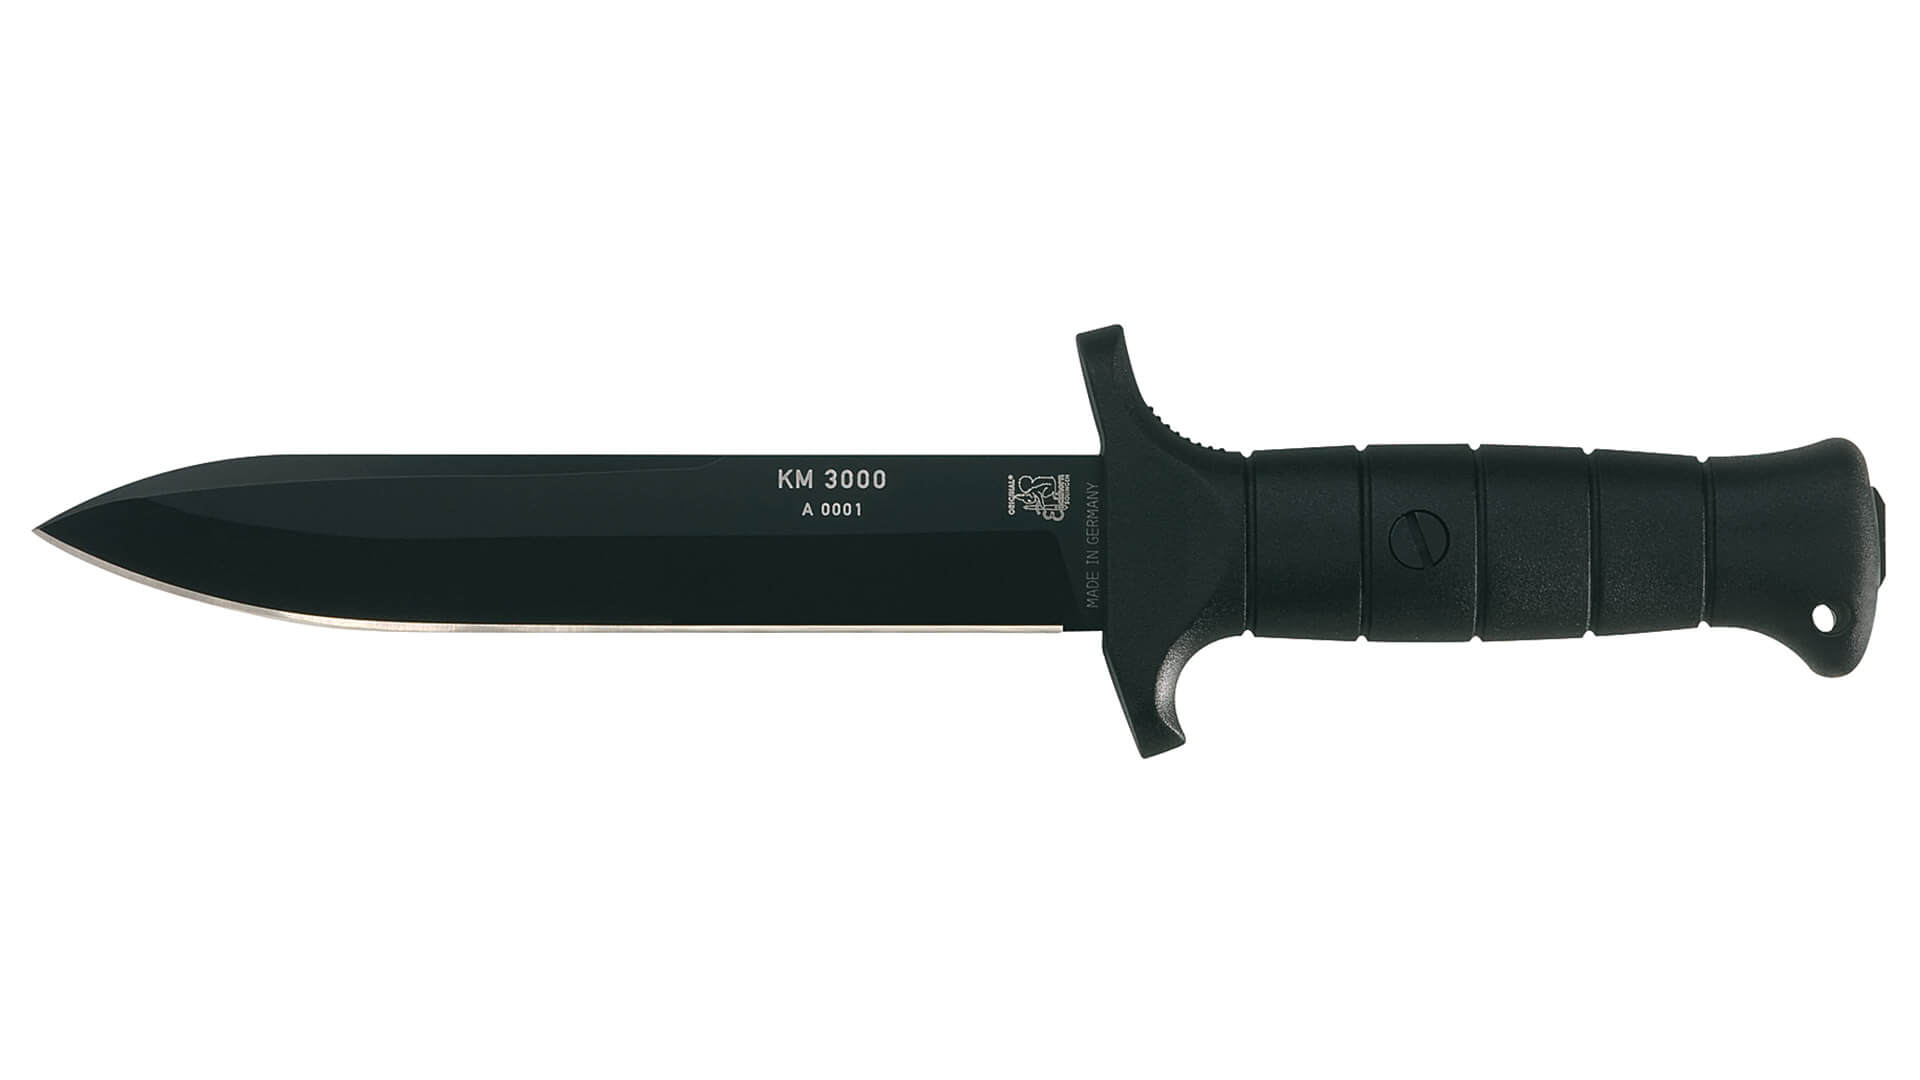 eickhorn-km3000-combat-knife-smooth-blade-bundeswehr-knife